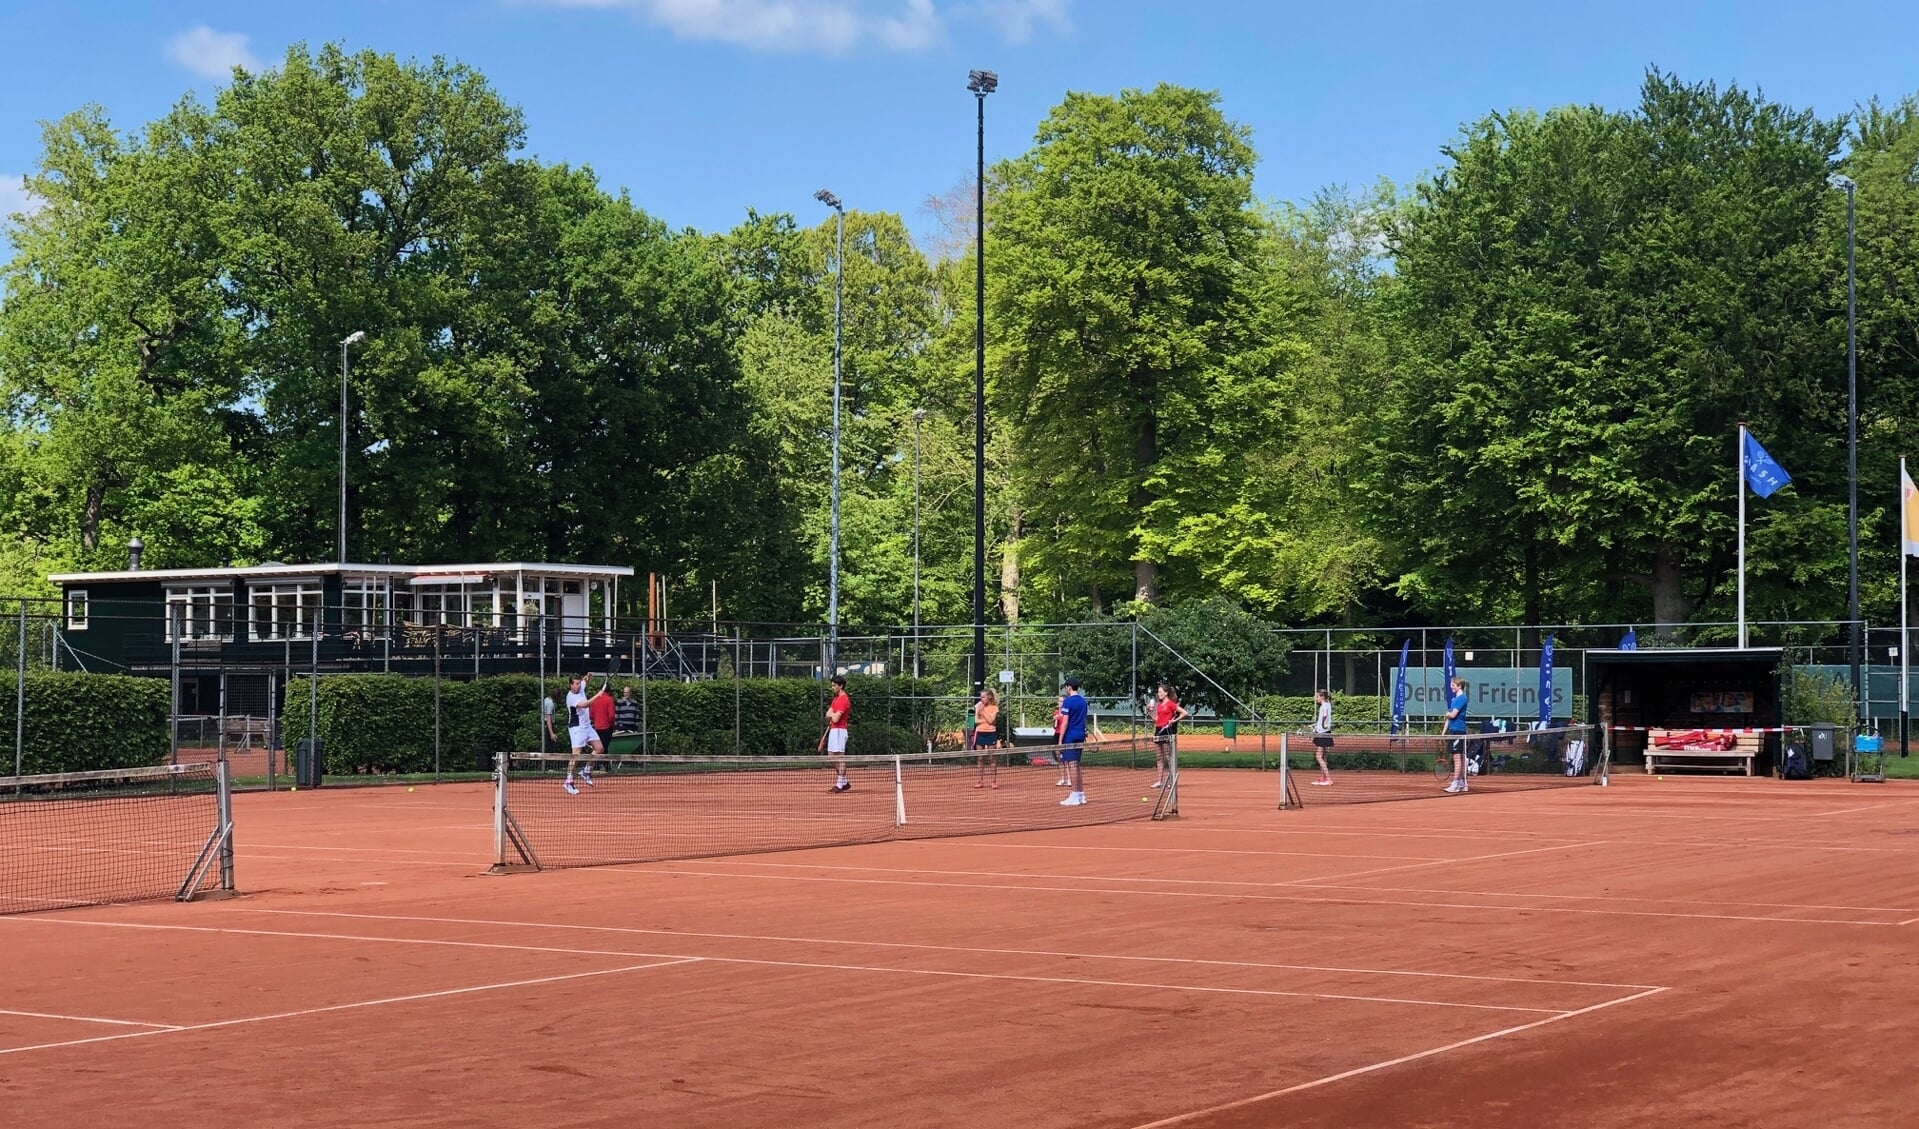 Tennisschool Smash is gestart met je jeugd trainingen bij ULTV Rhijnauwen. 